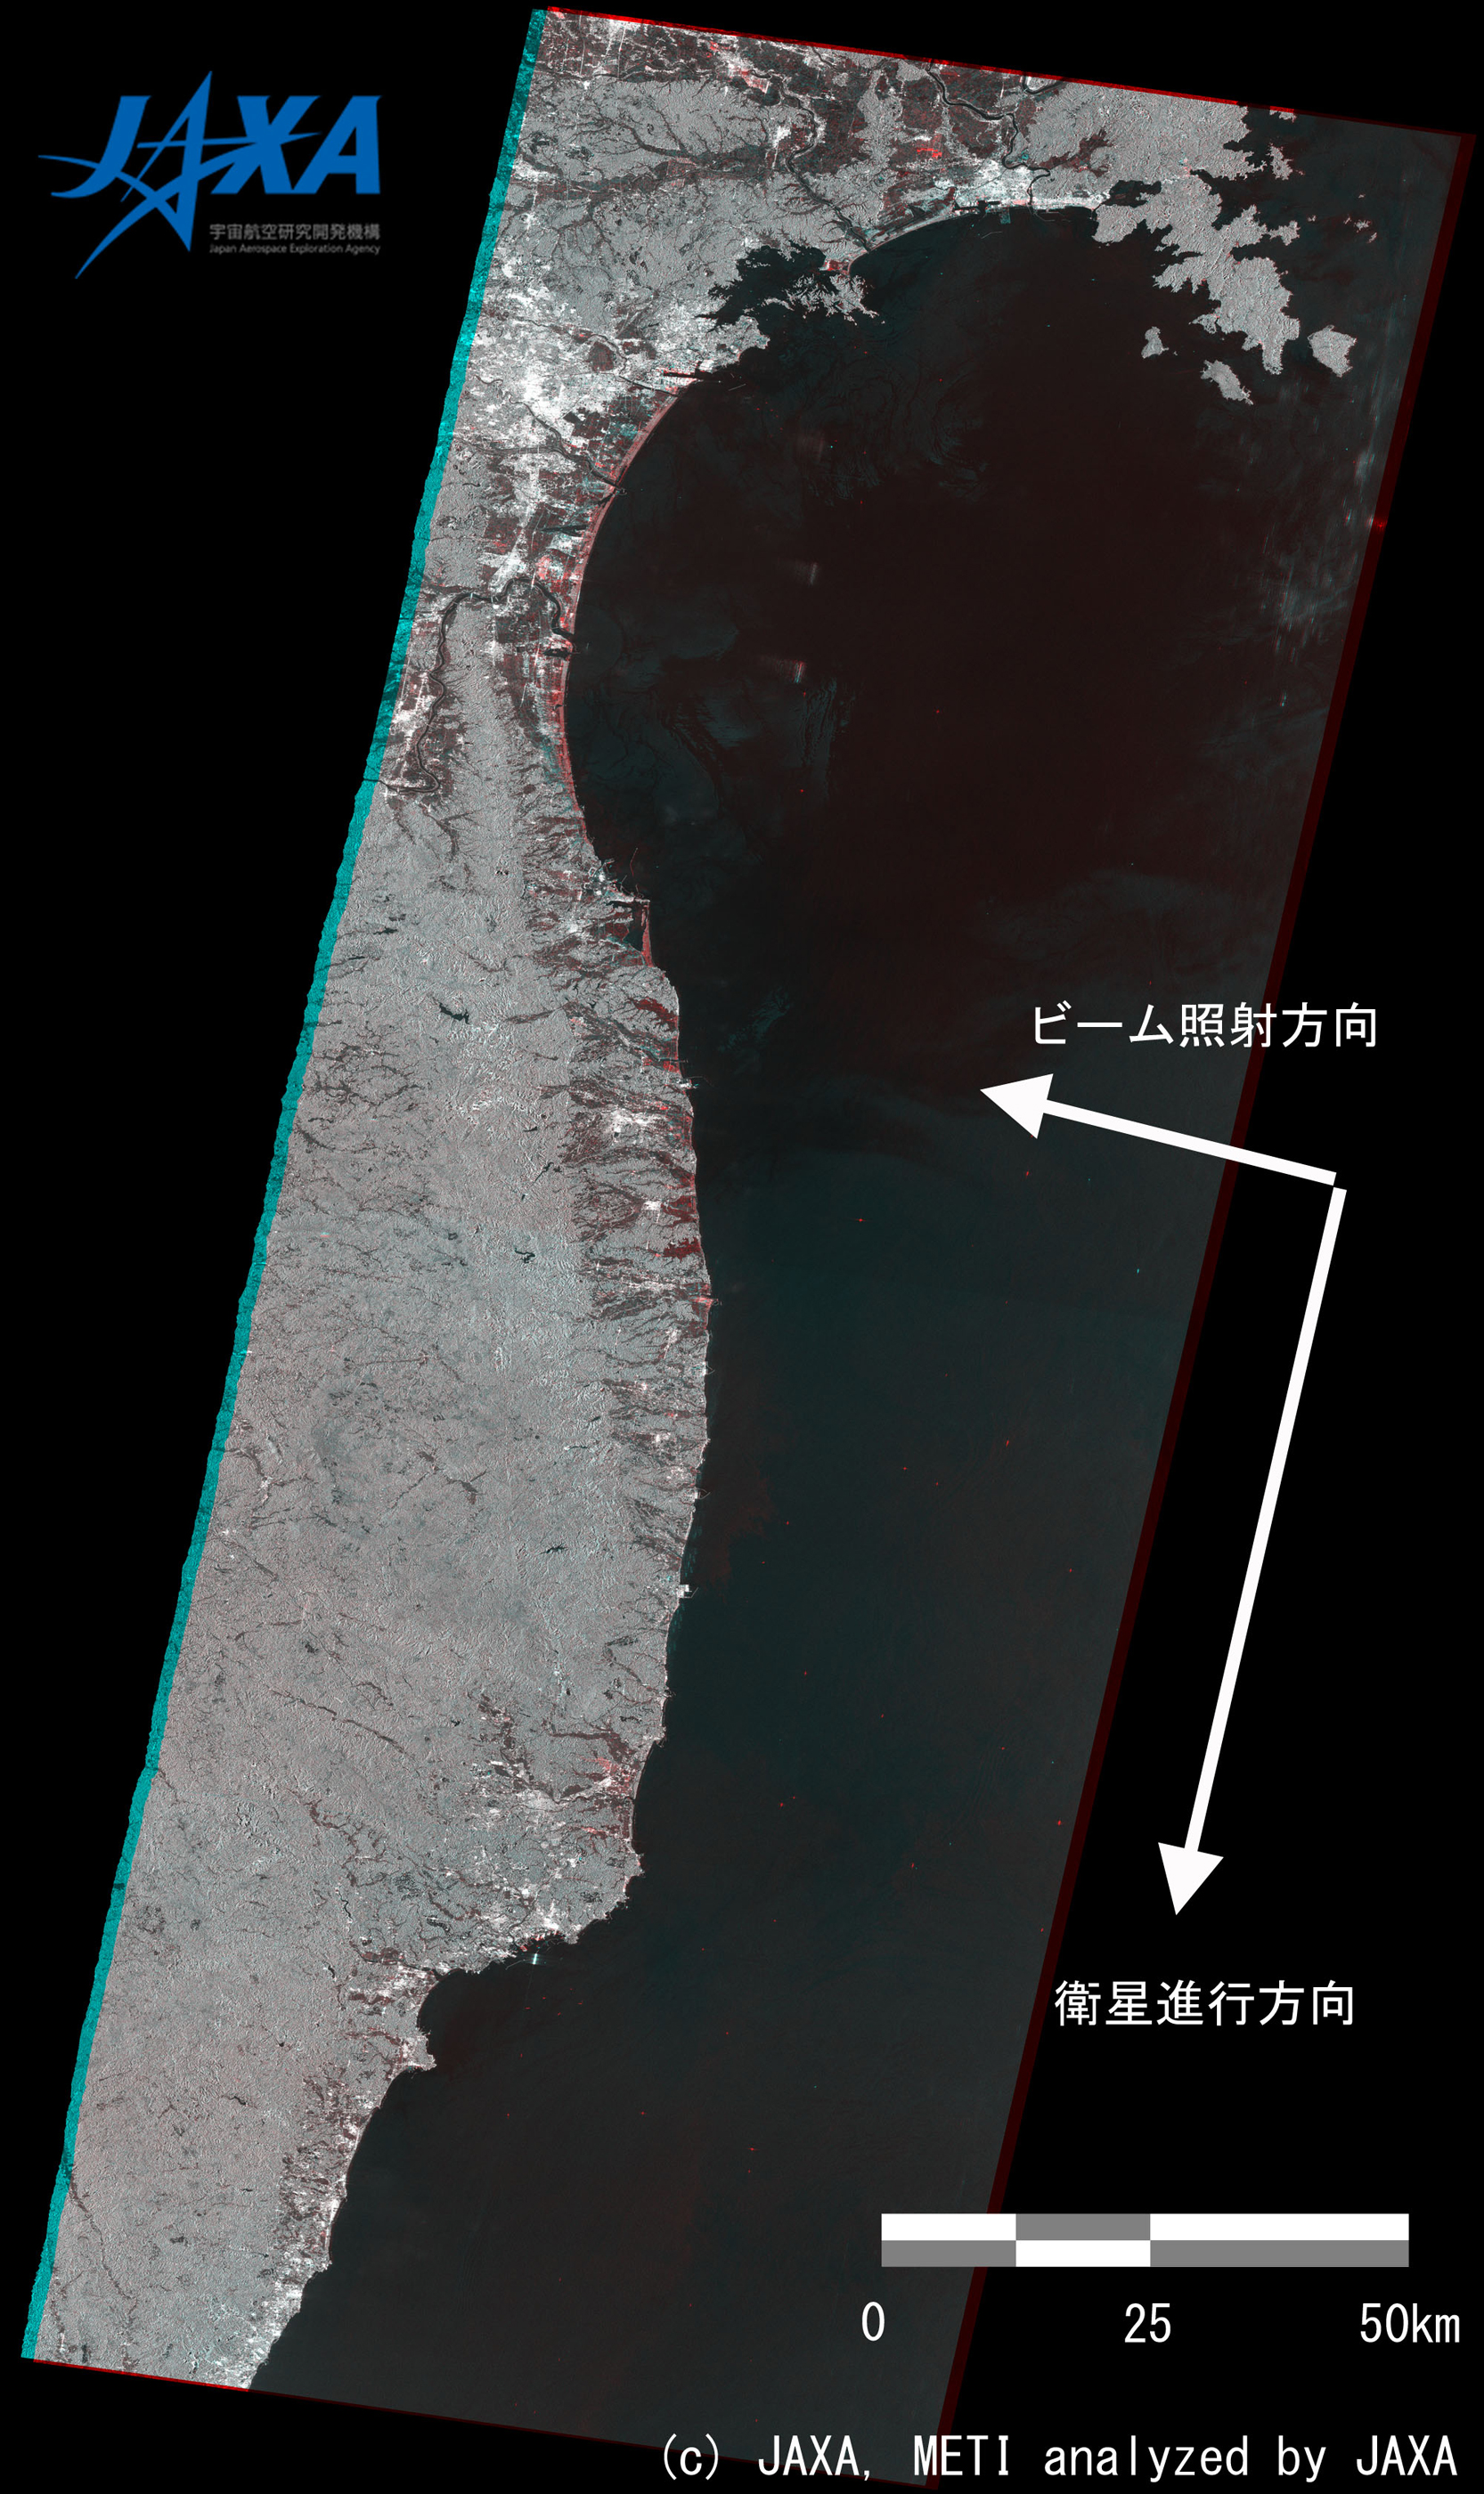 図1: PALSAR災害前後のカラー合成画像全体図